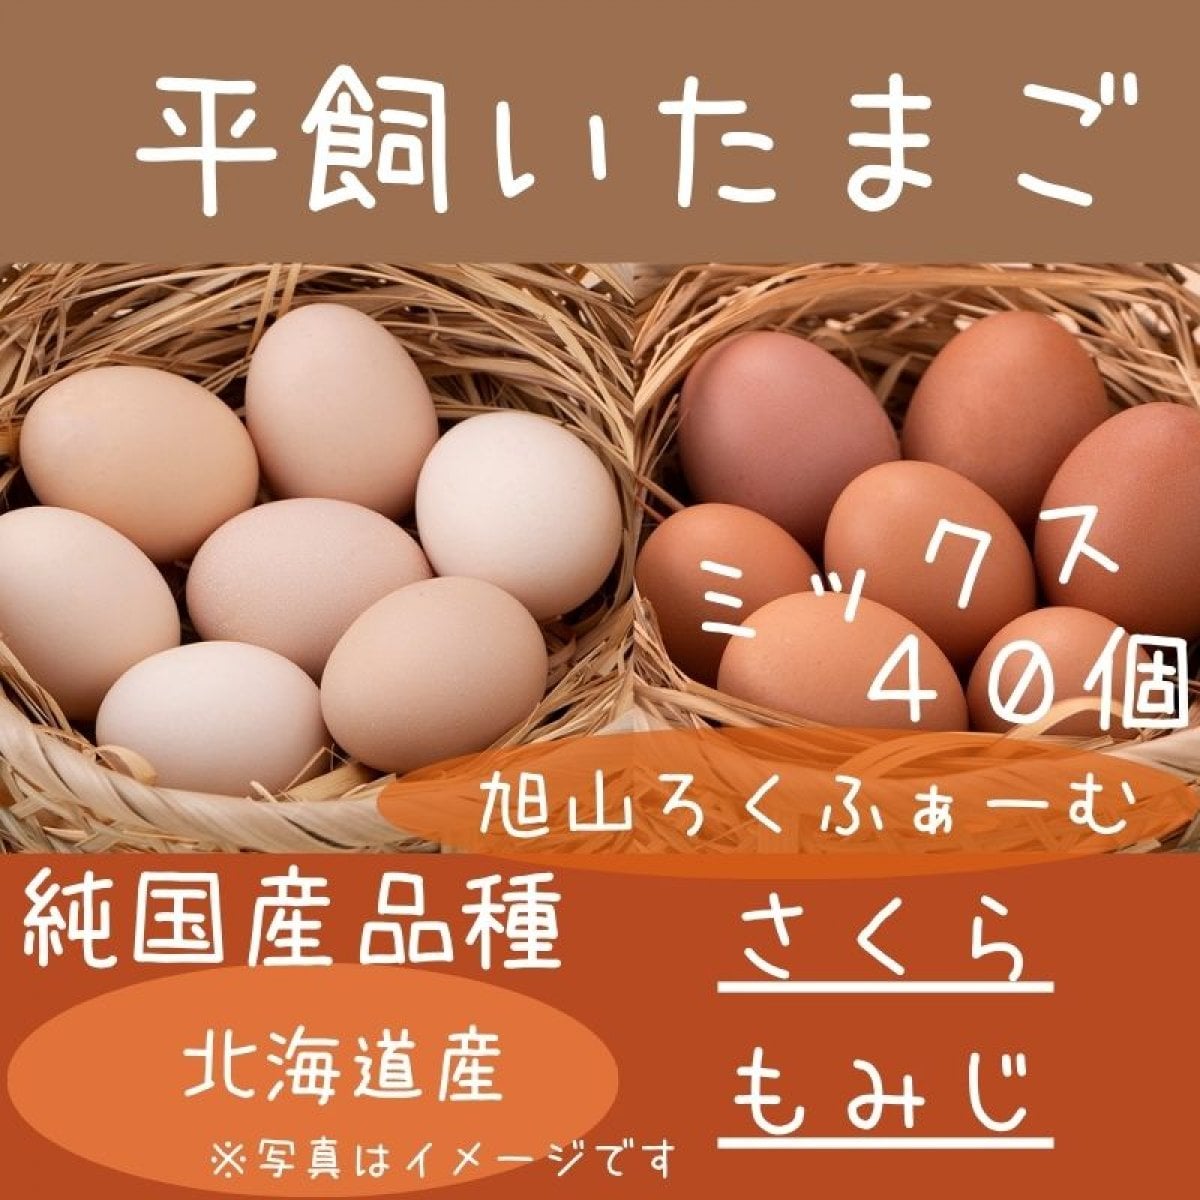 【送料無料】北海道平飼い純国産鶏たまご40個入り（36個＋破卵補償分4個含む）